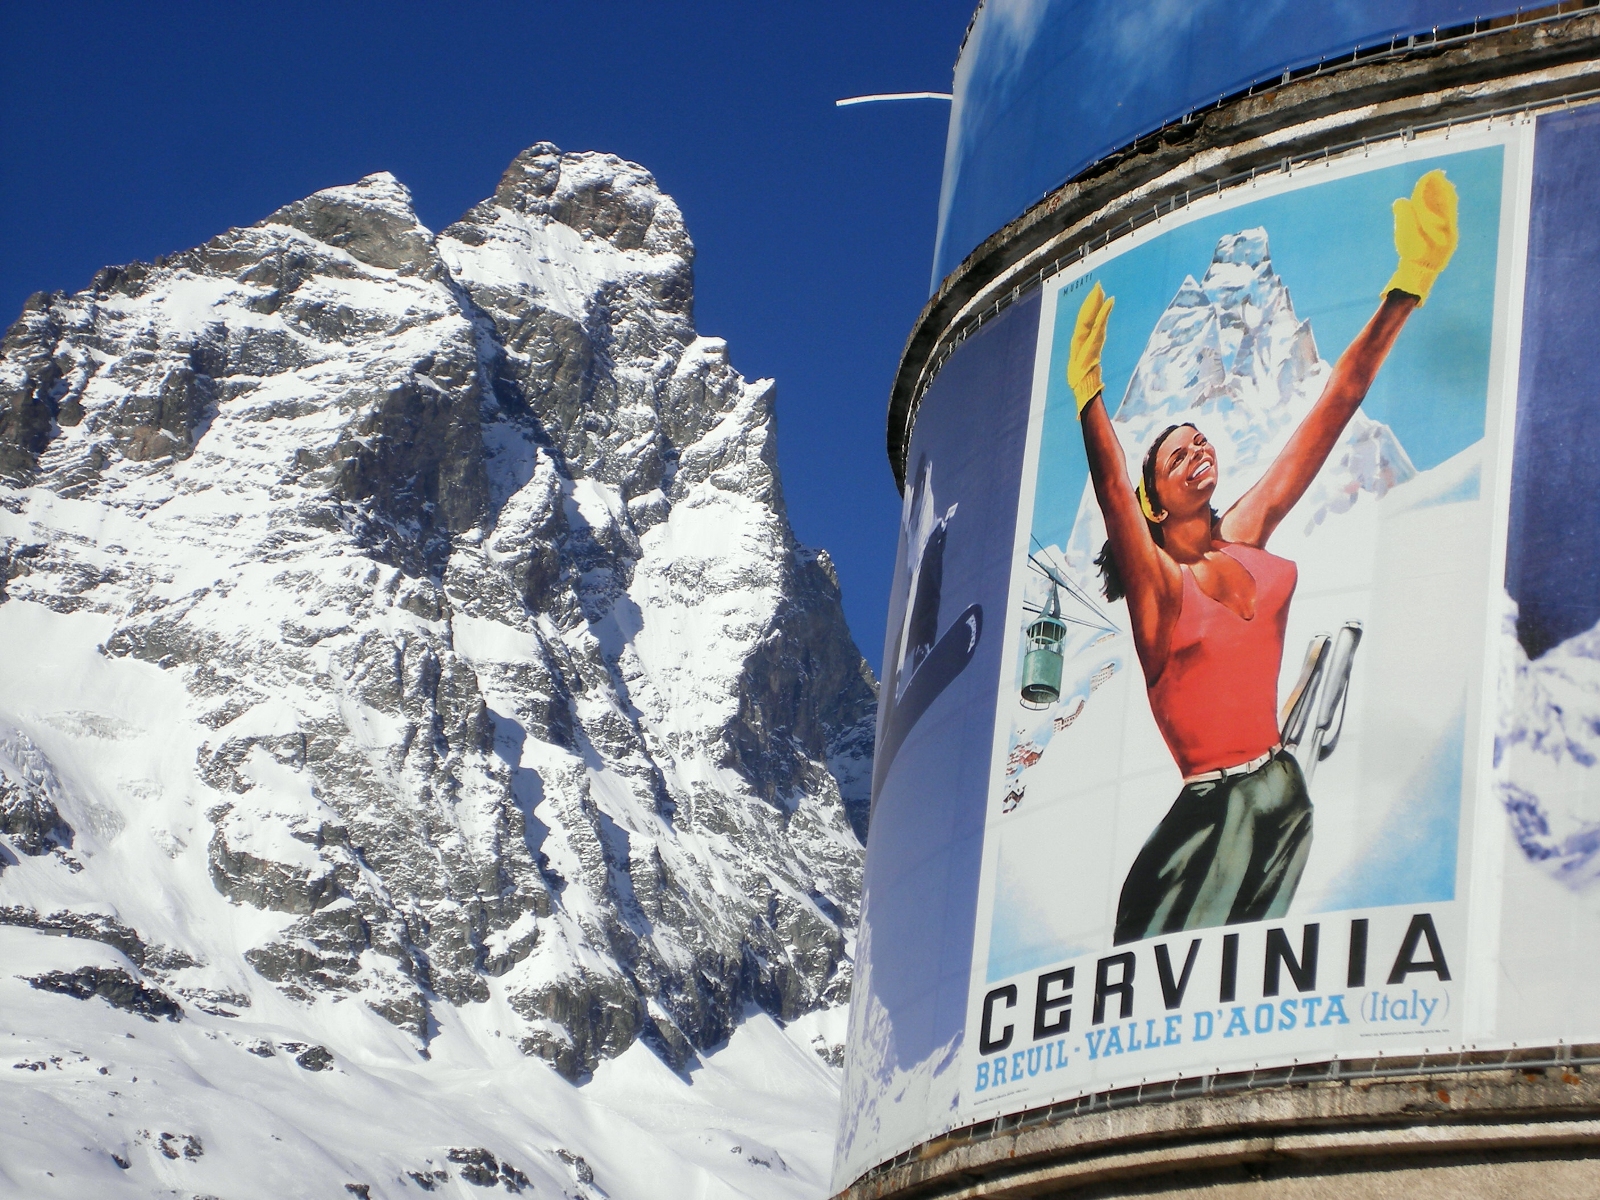 Vítejte pod Matterhornem! (Itálie, Cervinia)